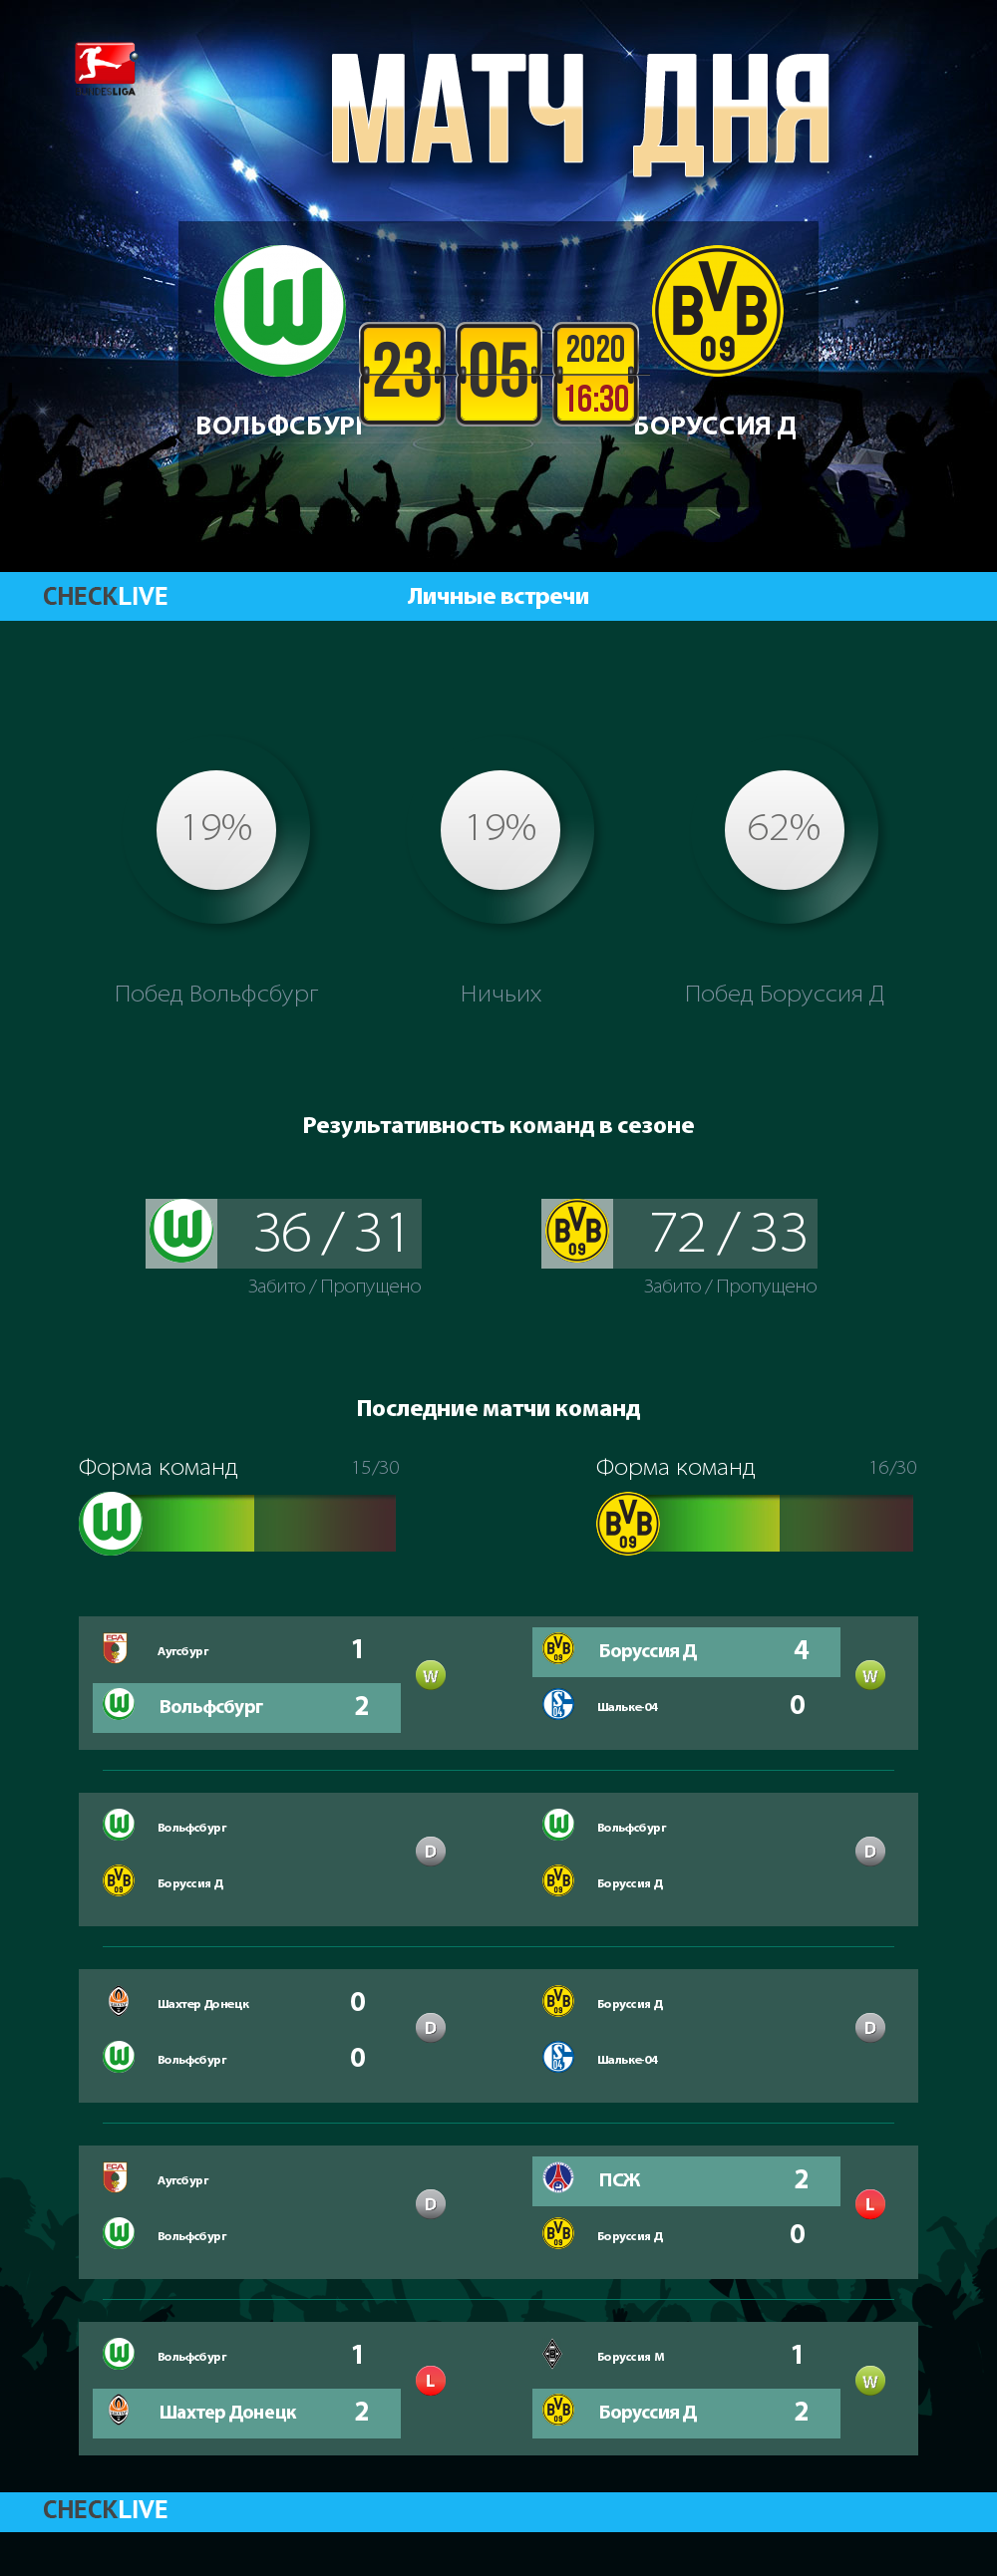 Инфографика Вольфсбург и Боруссия Д матч дня 23.05.2020